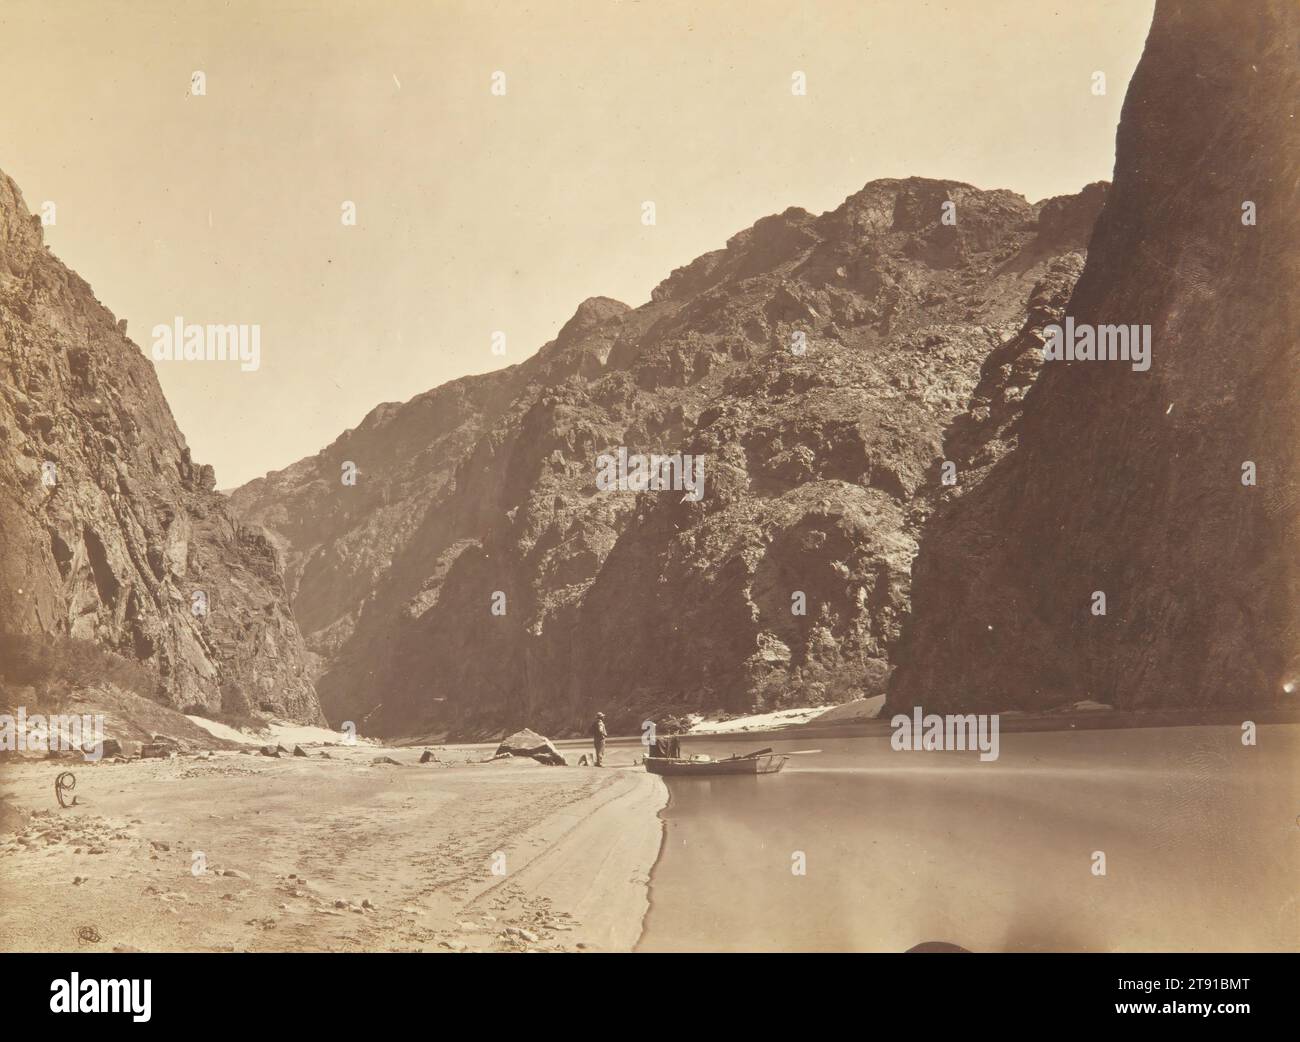 Black Canyon, Colorado River, Blick von Mirror Bar, 1871, Timothy H. O'Sullivan, amerikanische Küche, 1840 - 1882, 8 x 7/8 Zoll (20,32 x 27,62 cm) (Bild)16 x 19 15/16 Zoll (40,64 x 50,64 cm) (Mount), Albumendruck, USA, 19. Jahrhundert, Timothy H. O’Sullivan begann seine Karriere in der Fotografie, indem er für das Militär arbeitete, um den Bürgerkrieg (1861–65) zu dokumentieren. Später begann er Landschaften auf militärischen und geographischen Expeditionen zu fotografieren, bei denen er ein nasses Kollodeon-Verfahren benutzte, eine Technik, die es ihm ermöglichte, eine tragbare Dunkelkammer zu haben, die darin Bilder entwickeln konnte Stockfoto